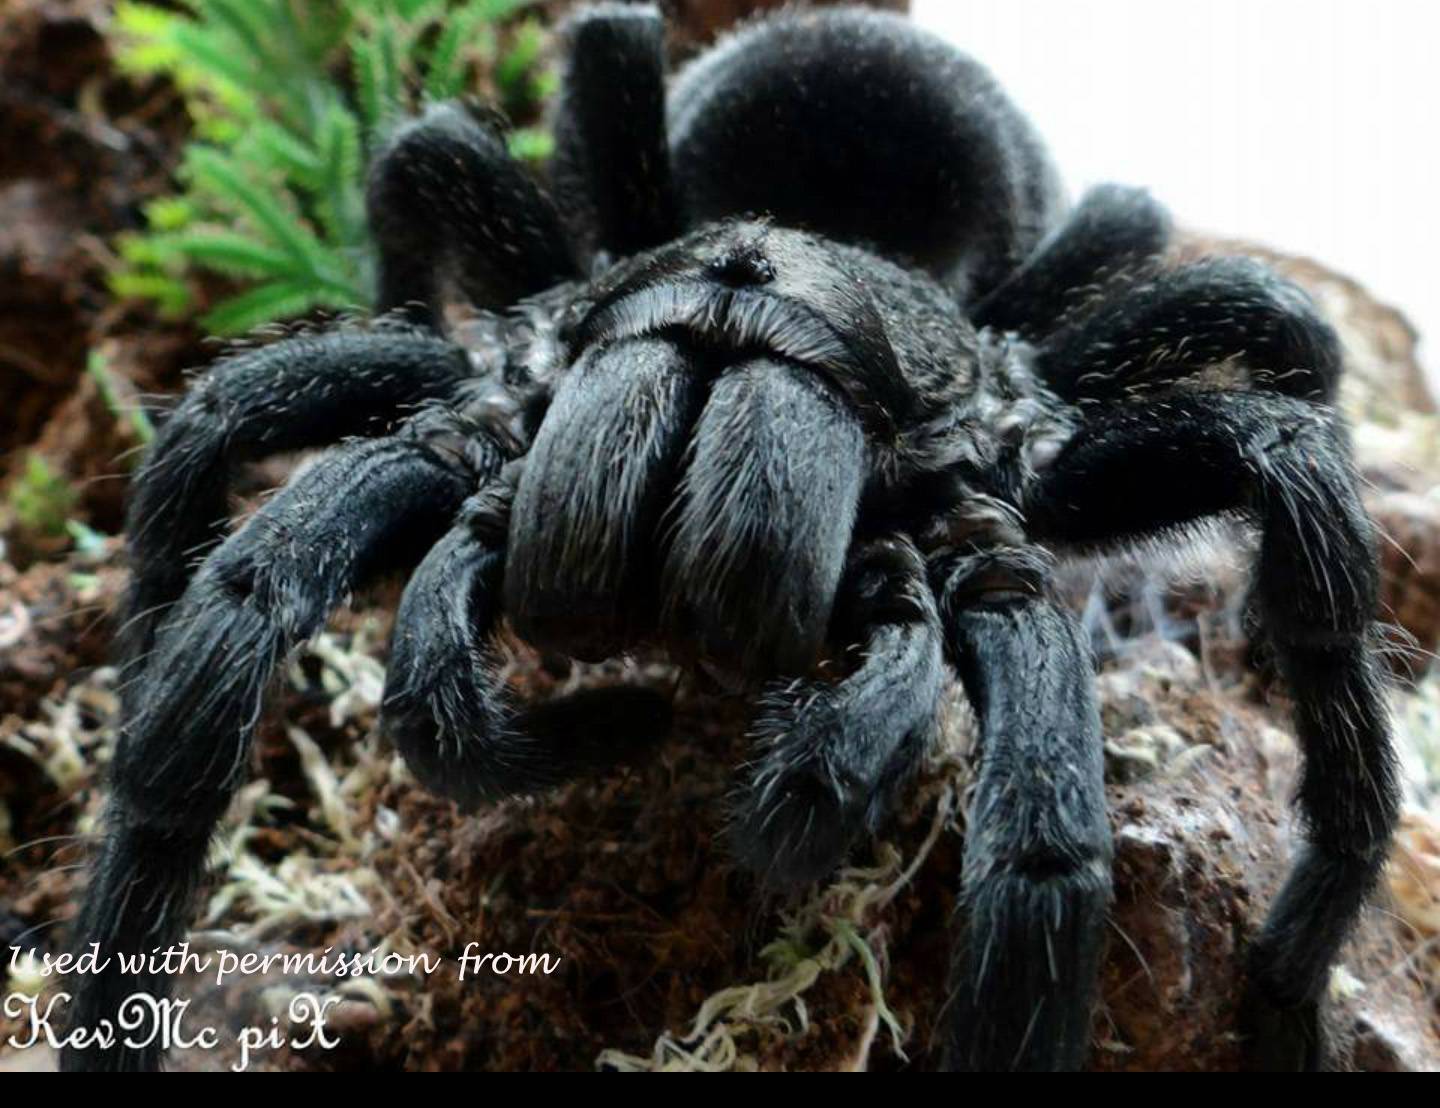 Южнорусский тарантул (фото): правила домашнего содержания